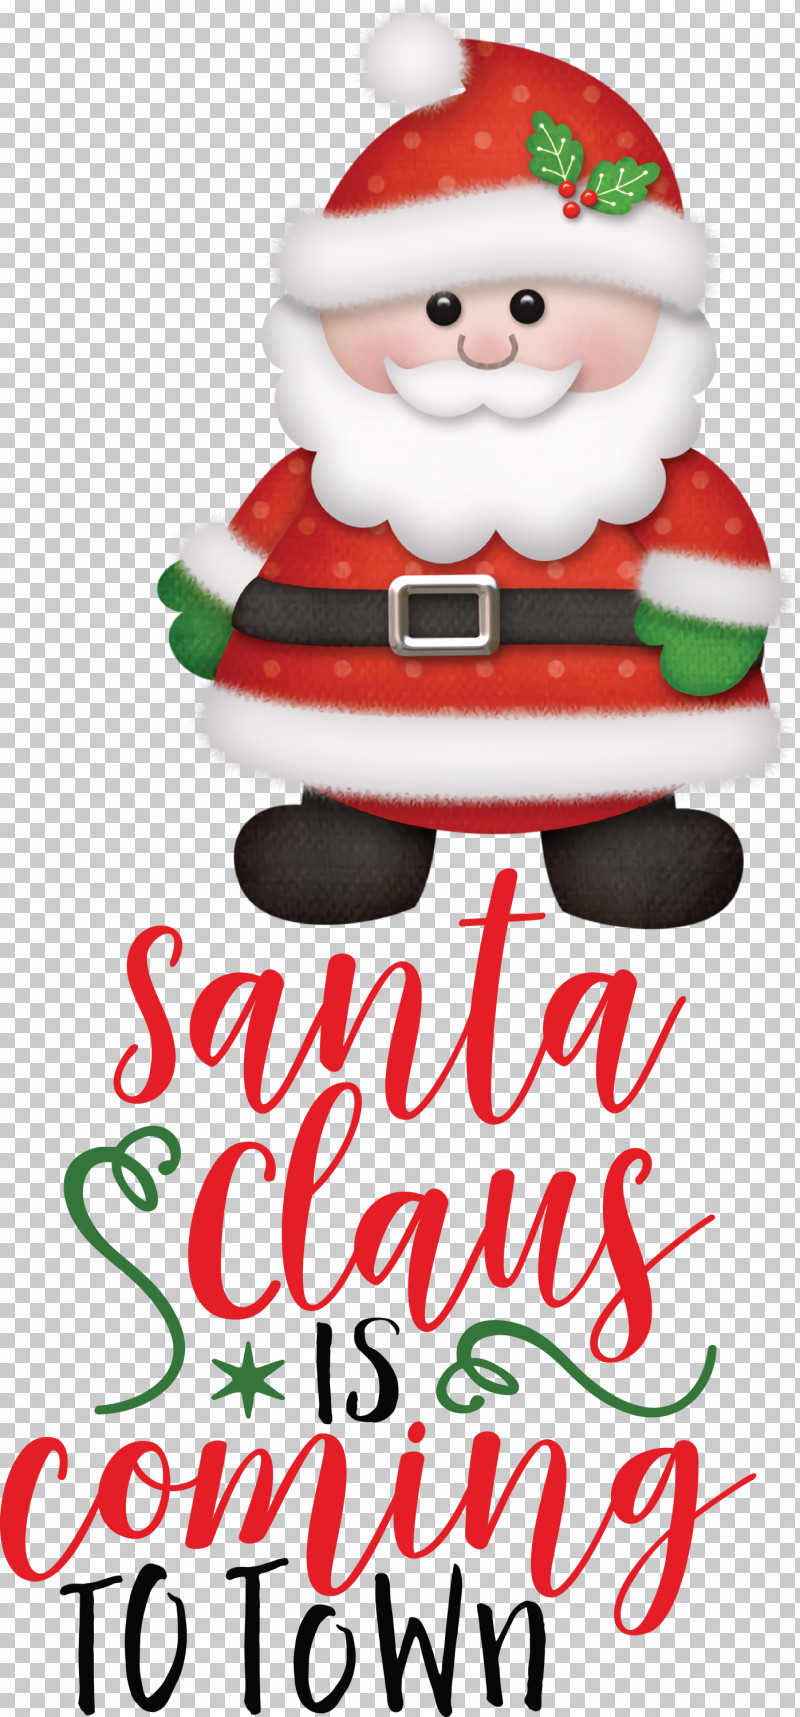 Santa Claus Is Coming Santa Claus Christmas PNG, Clipart, Christmas, Christmas Day, Christmas Ornament, Christmas Ornament M, Christmas Tree Free PNG Download